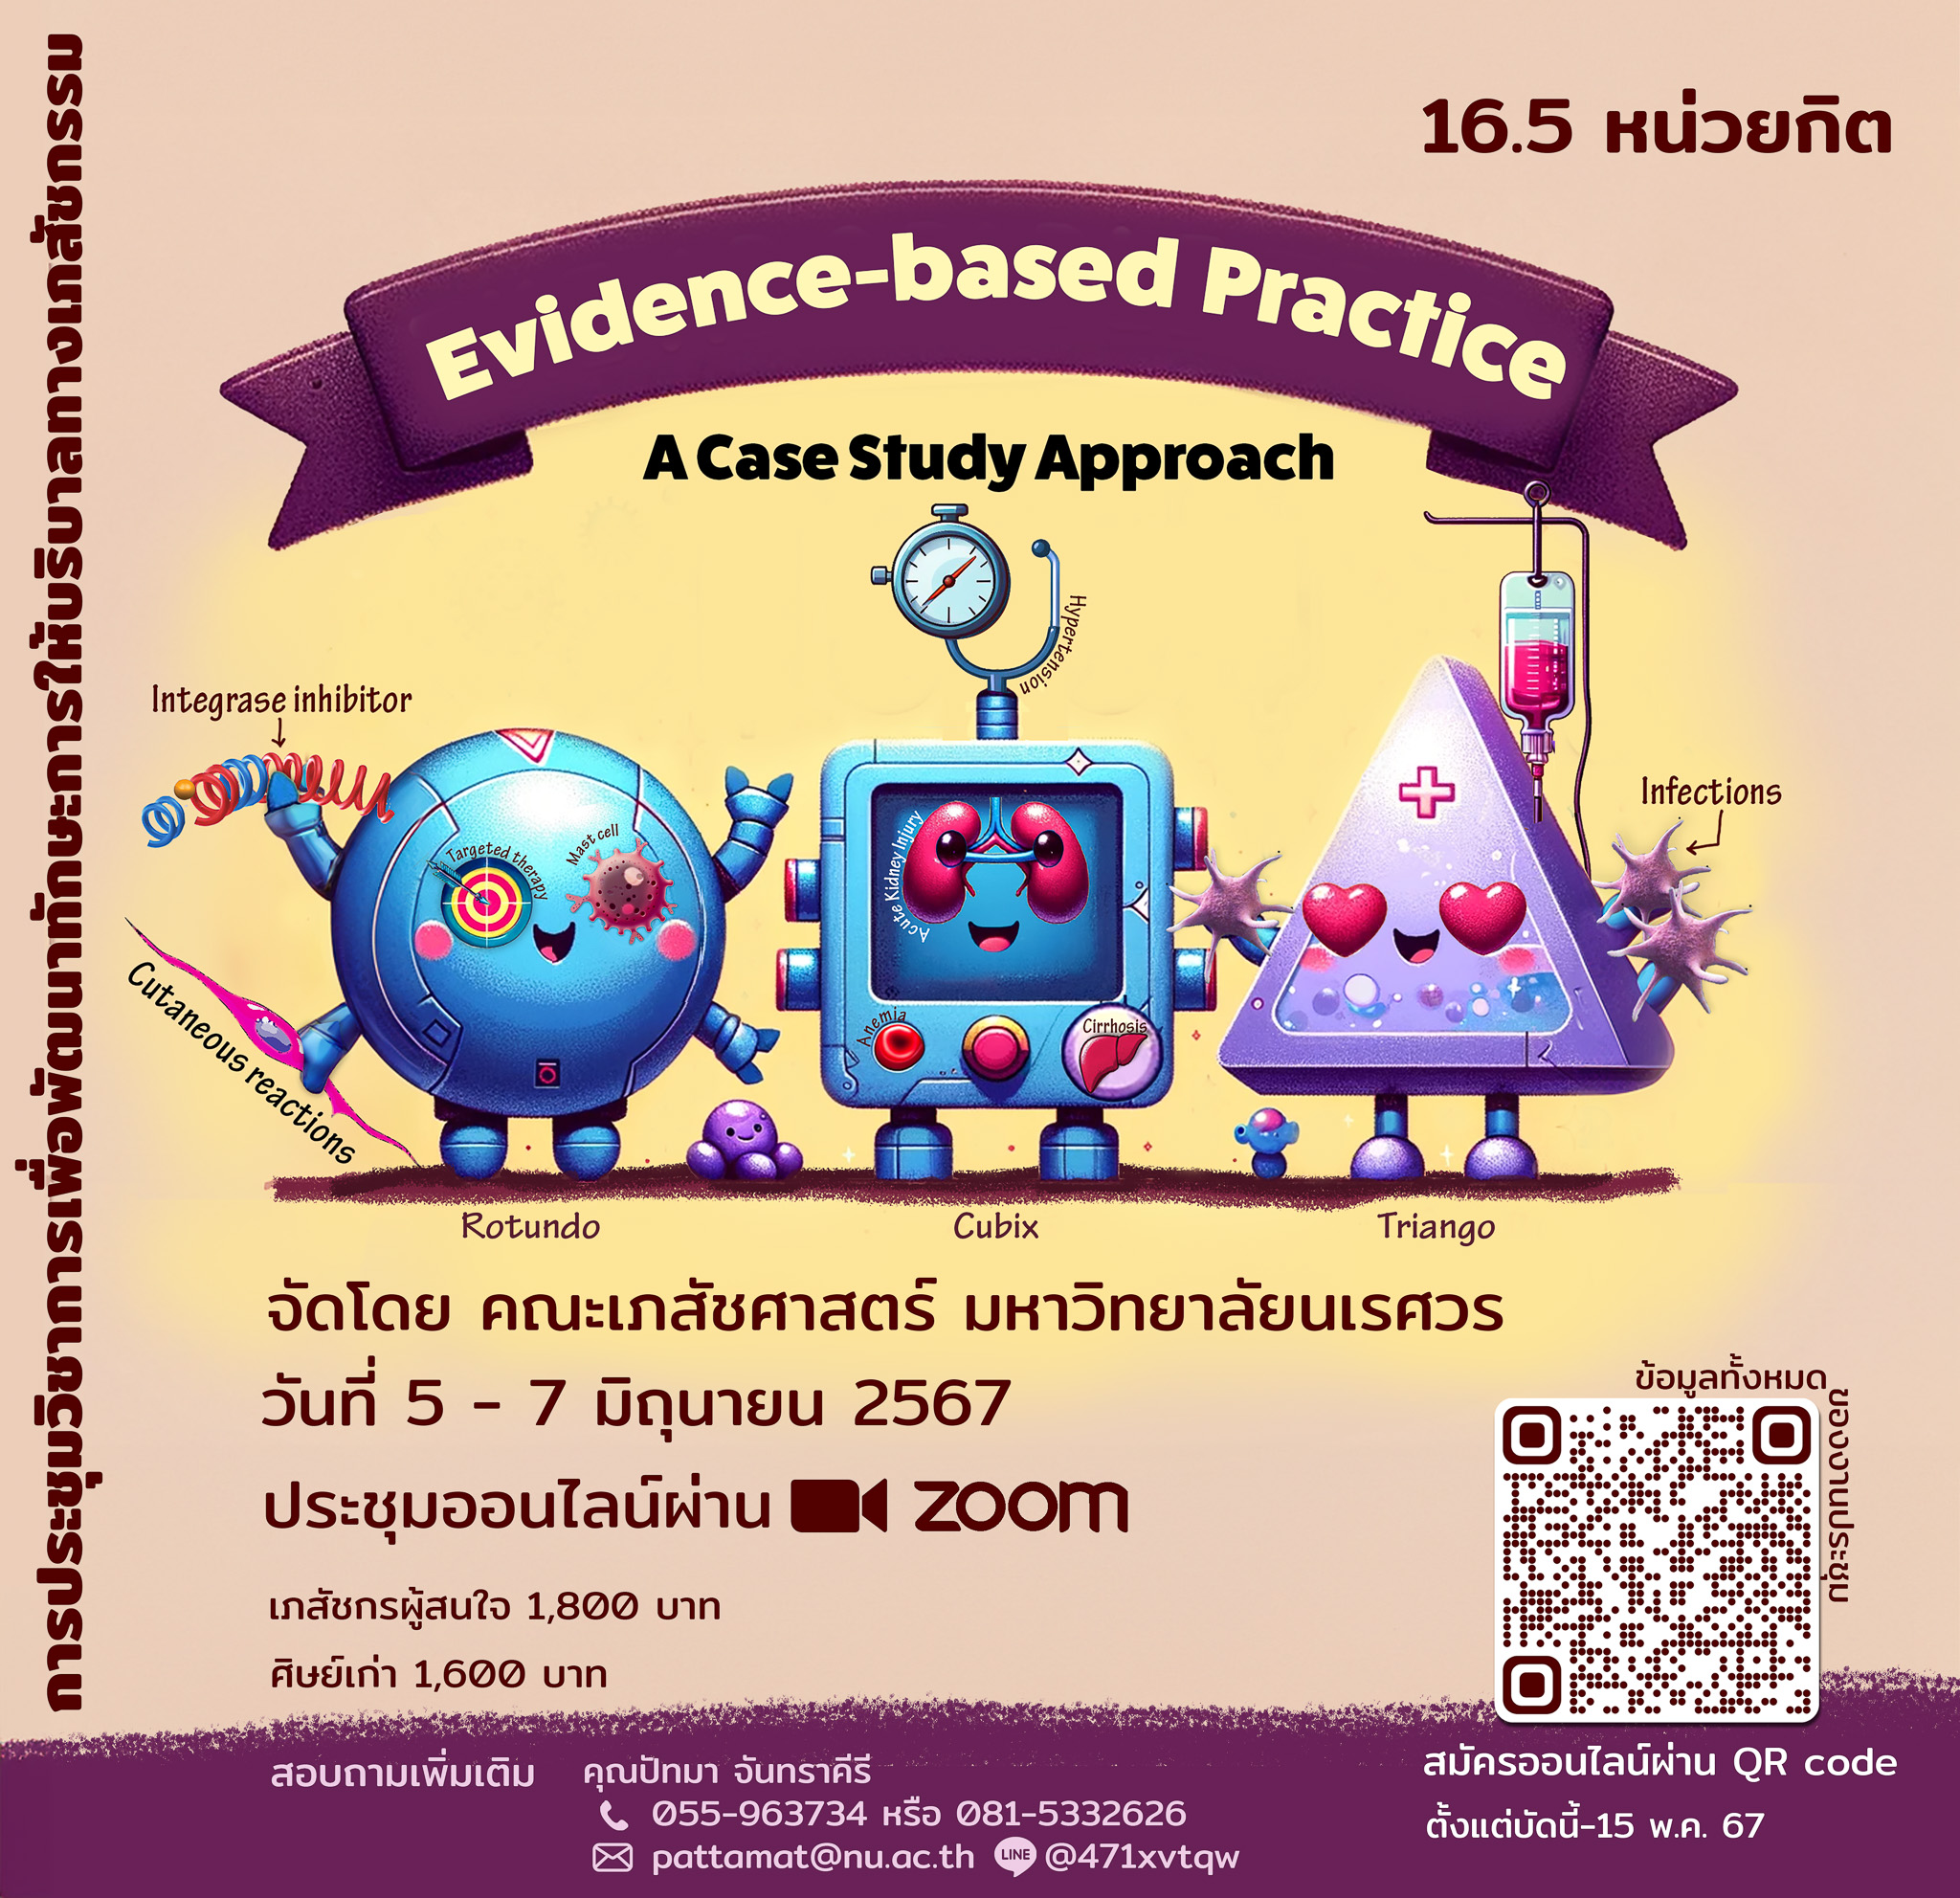 งานประชุมวิชาการบริบาลทางเภสัชกรรม  เรื่อง Evidence-based Practice : A Case Study Approach